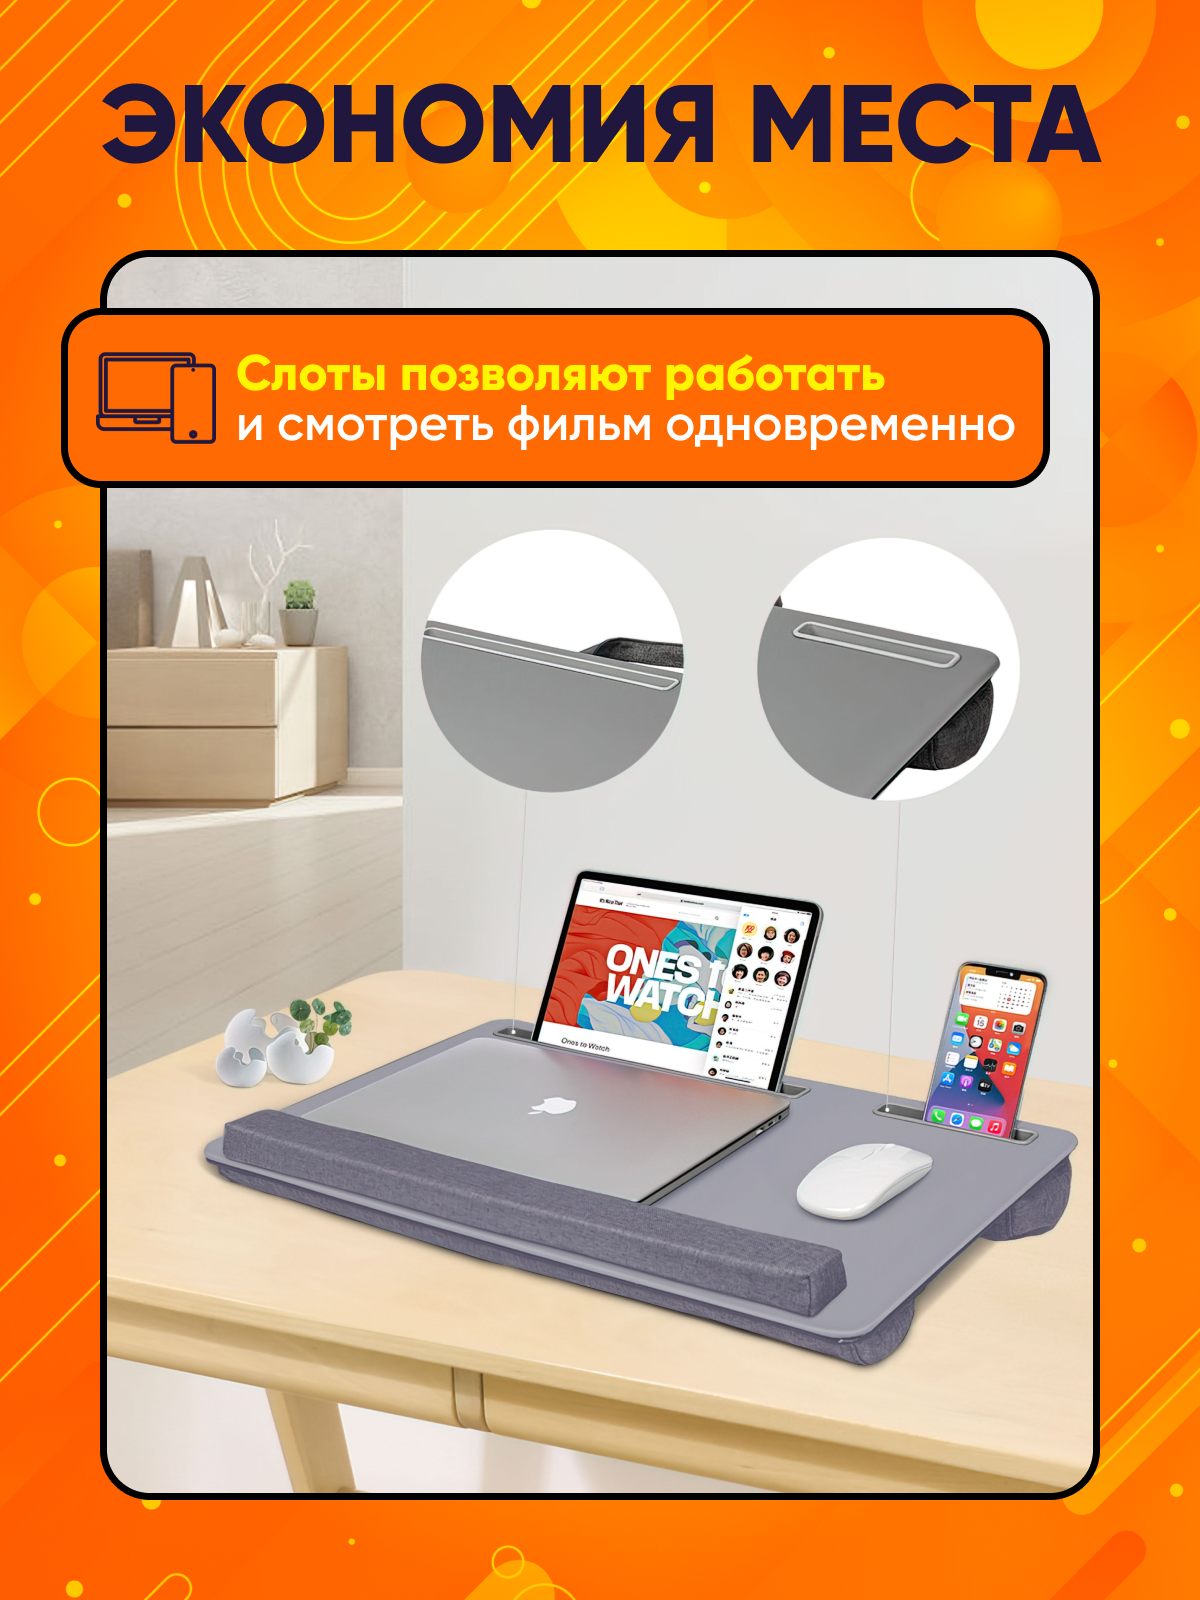 Портативный столик для ноутбука Shakhmatov Store